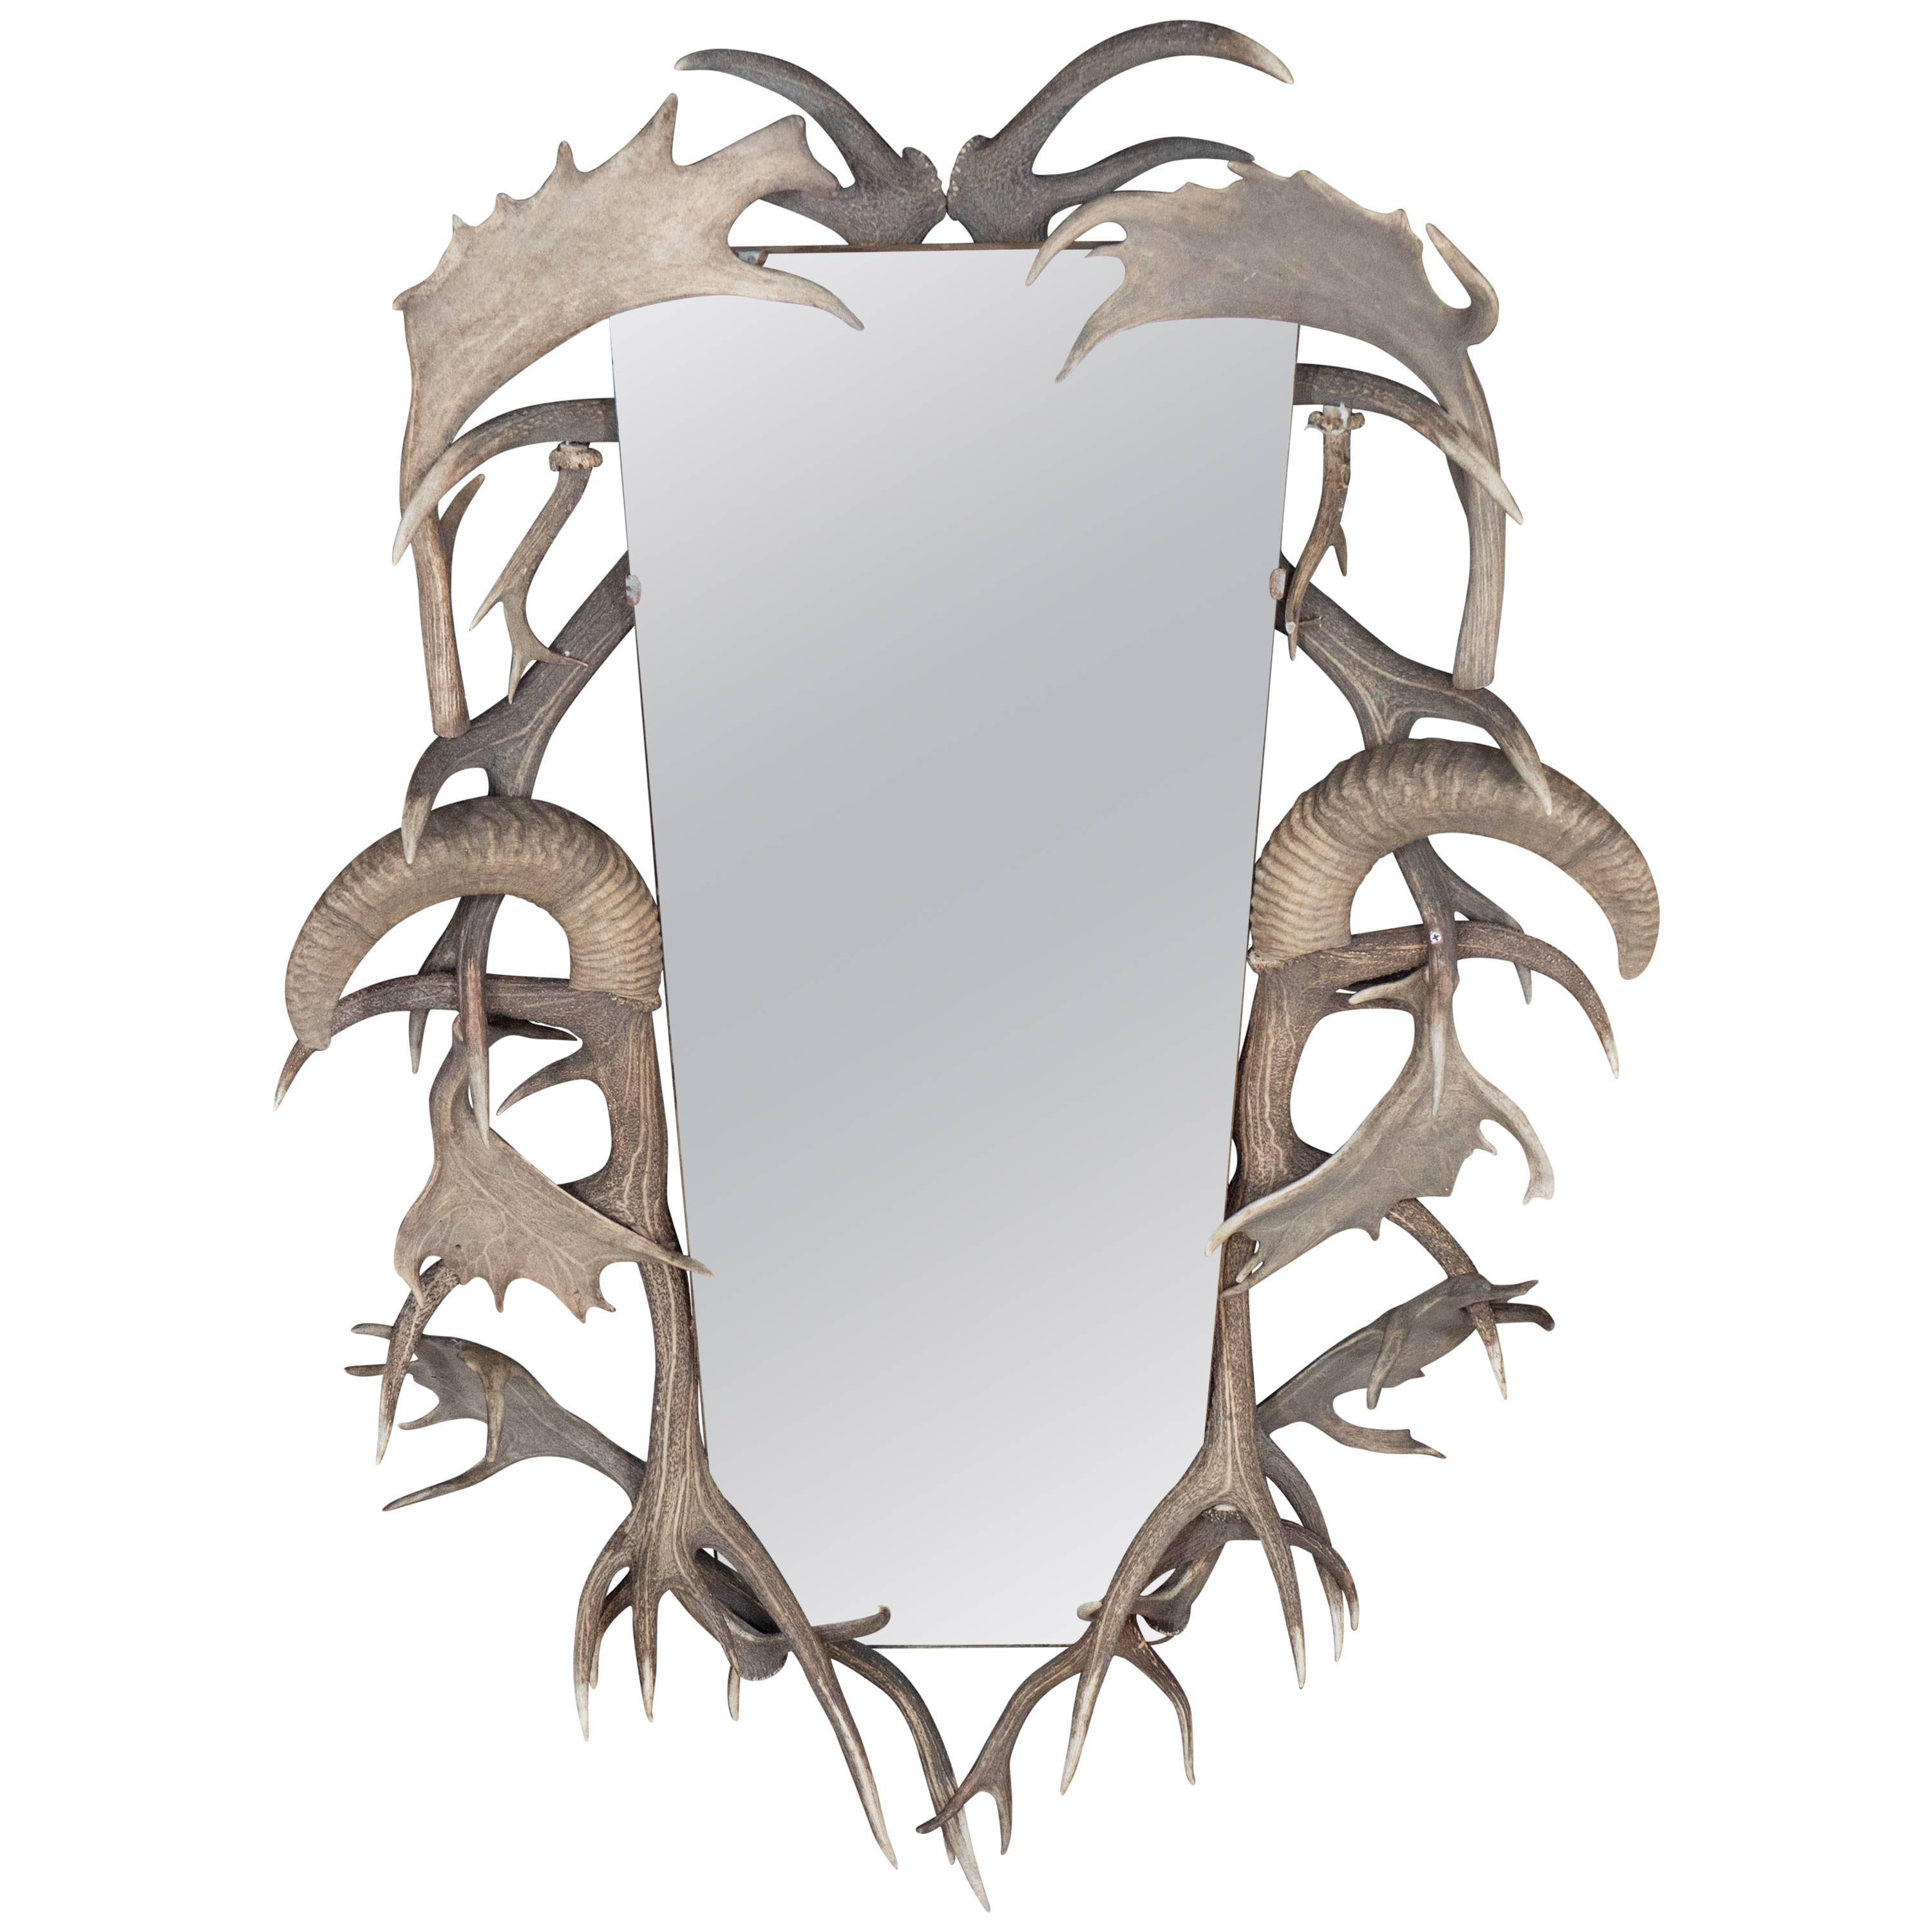 Horn & Antler Trophy Mirror